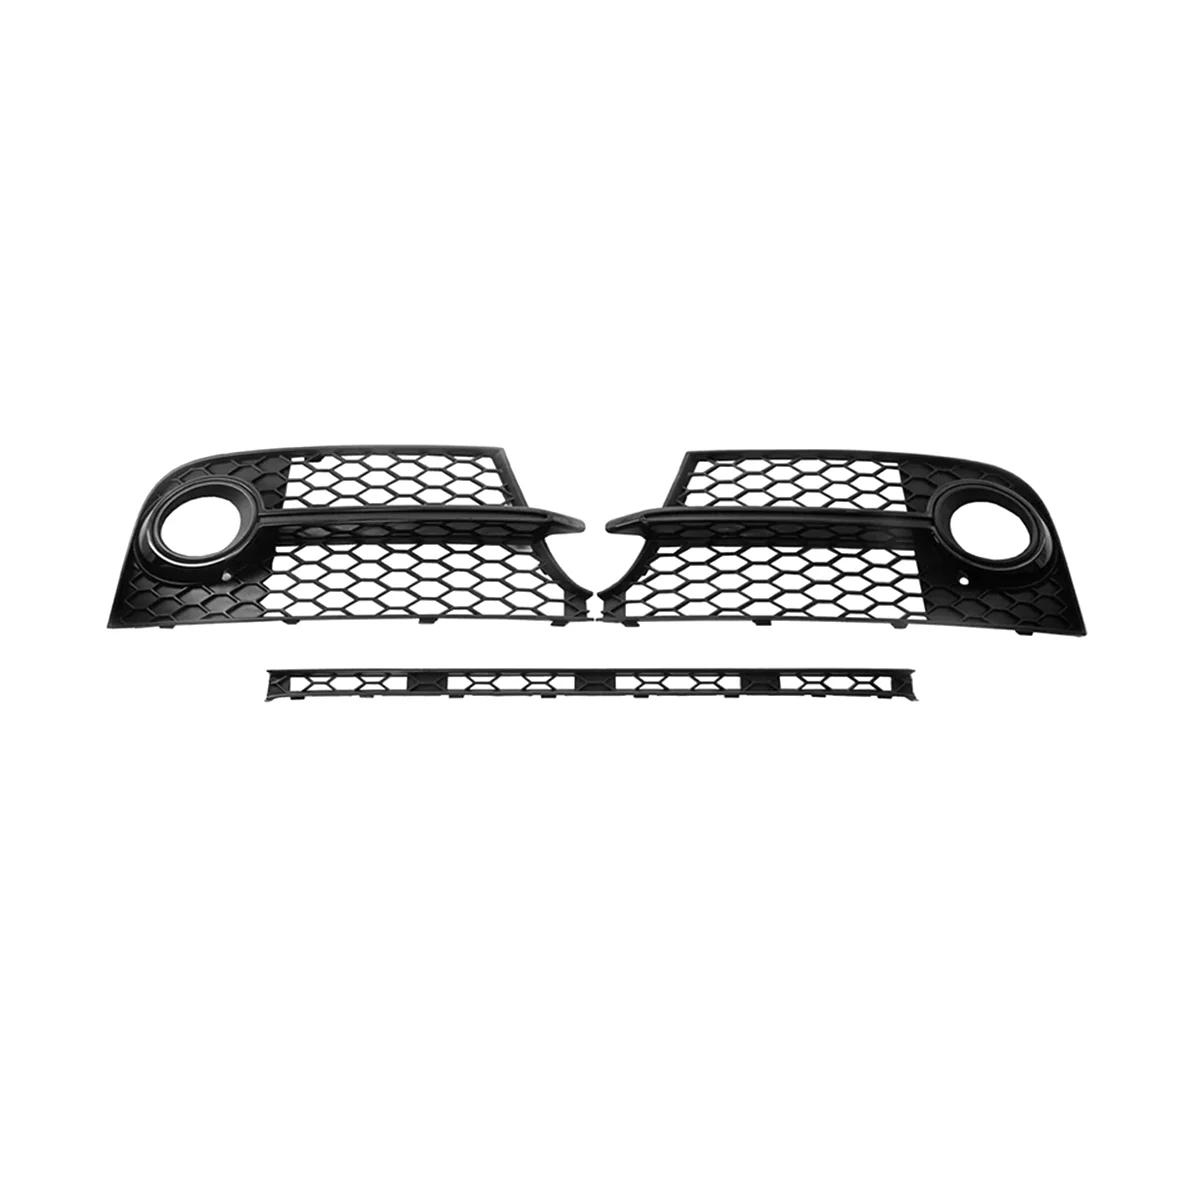 

Глянцевый черный левый и правый передний бампер, противотуманная фара, рамка, противотуманная фара для Audi TTS 2011-2014